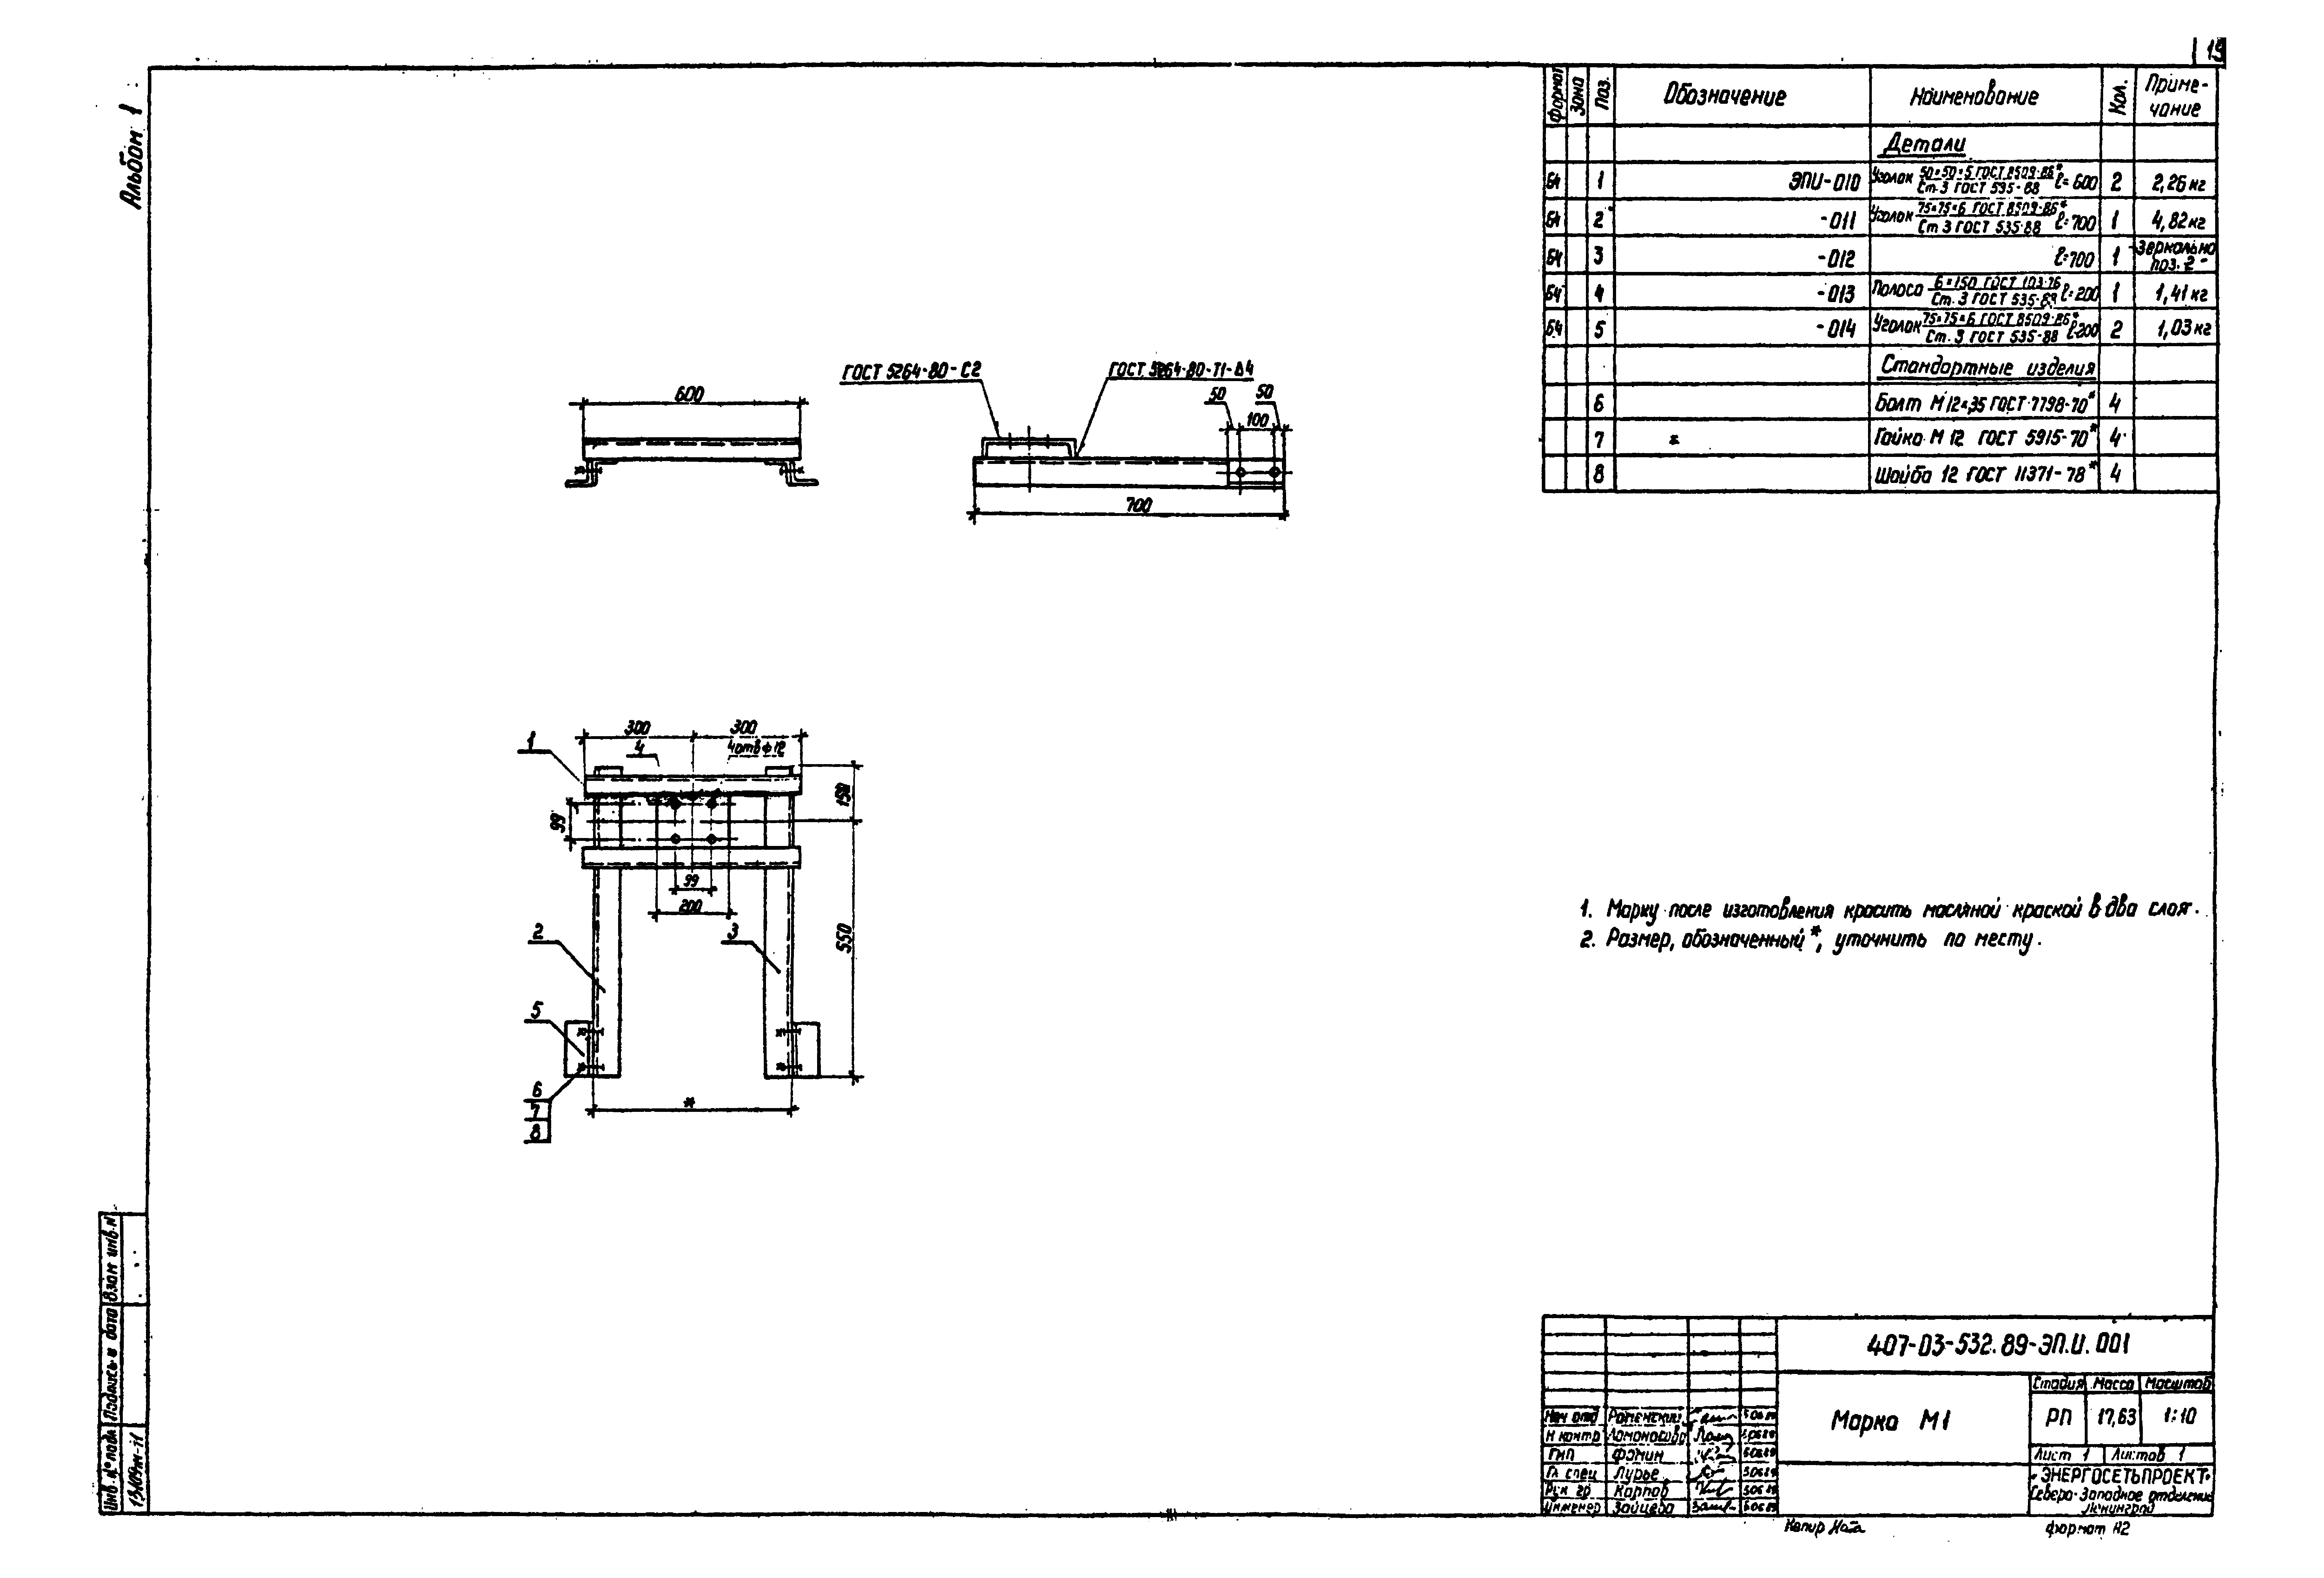 Типовые материалы для проектирования 407-03-532.89